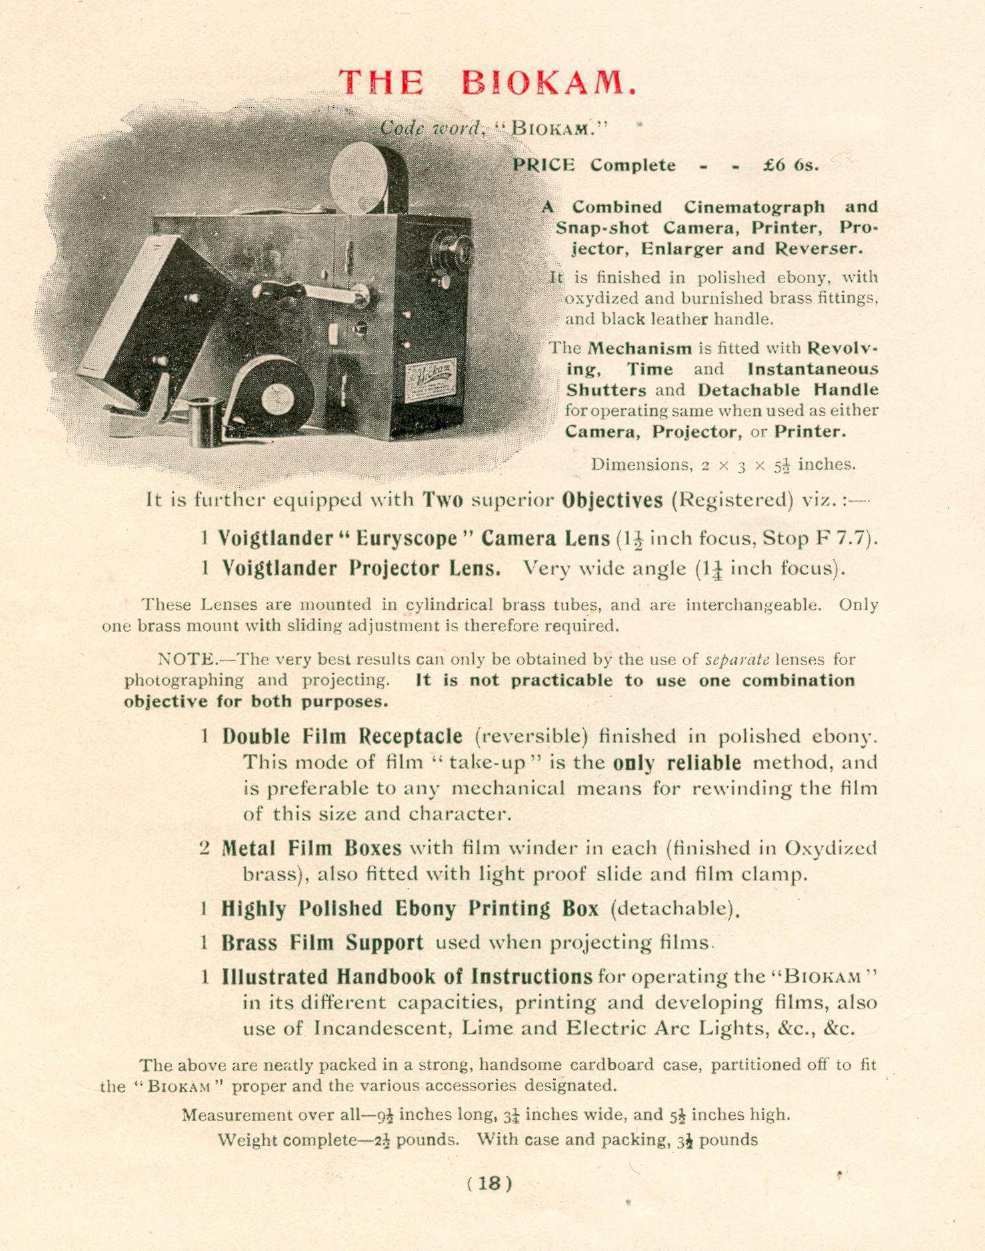 Biokam Альфреда Дарлинга и Альфреда Ренча. Система для 17,5мм пленки. Состоит из фото и кинокамеры, проектора, и устройства печати. 1899